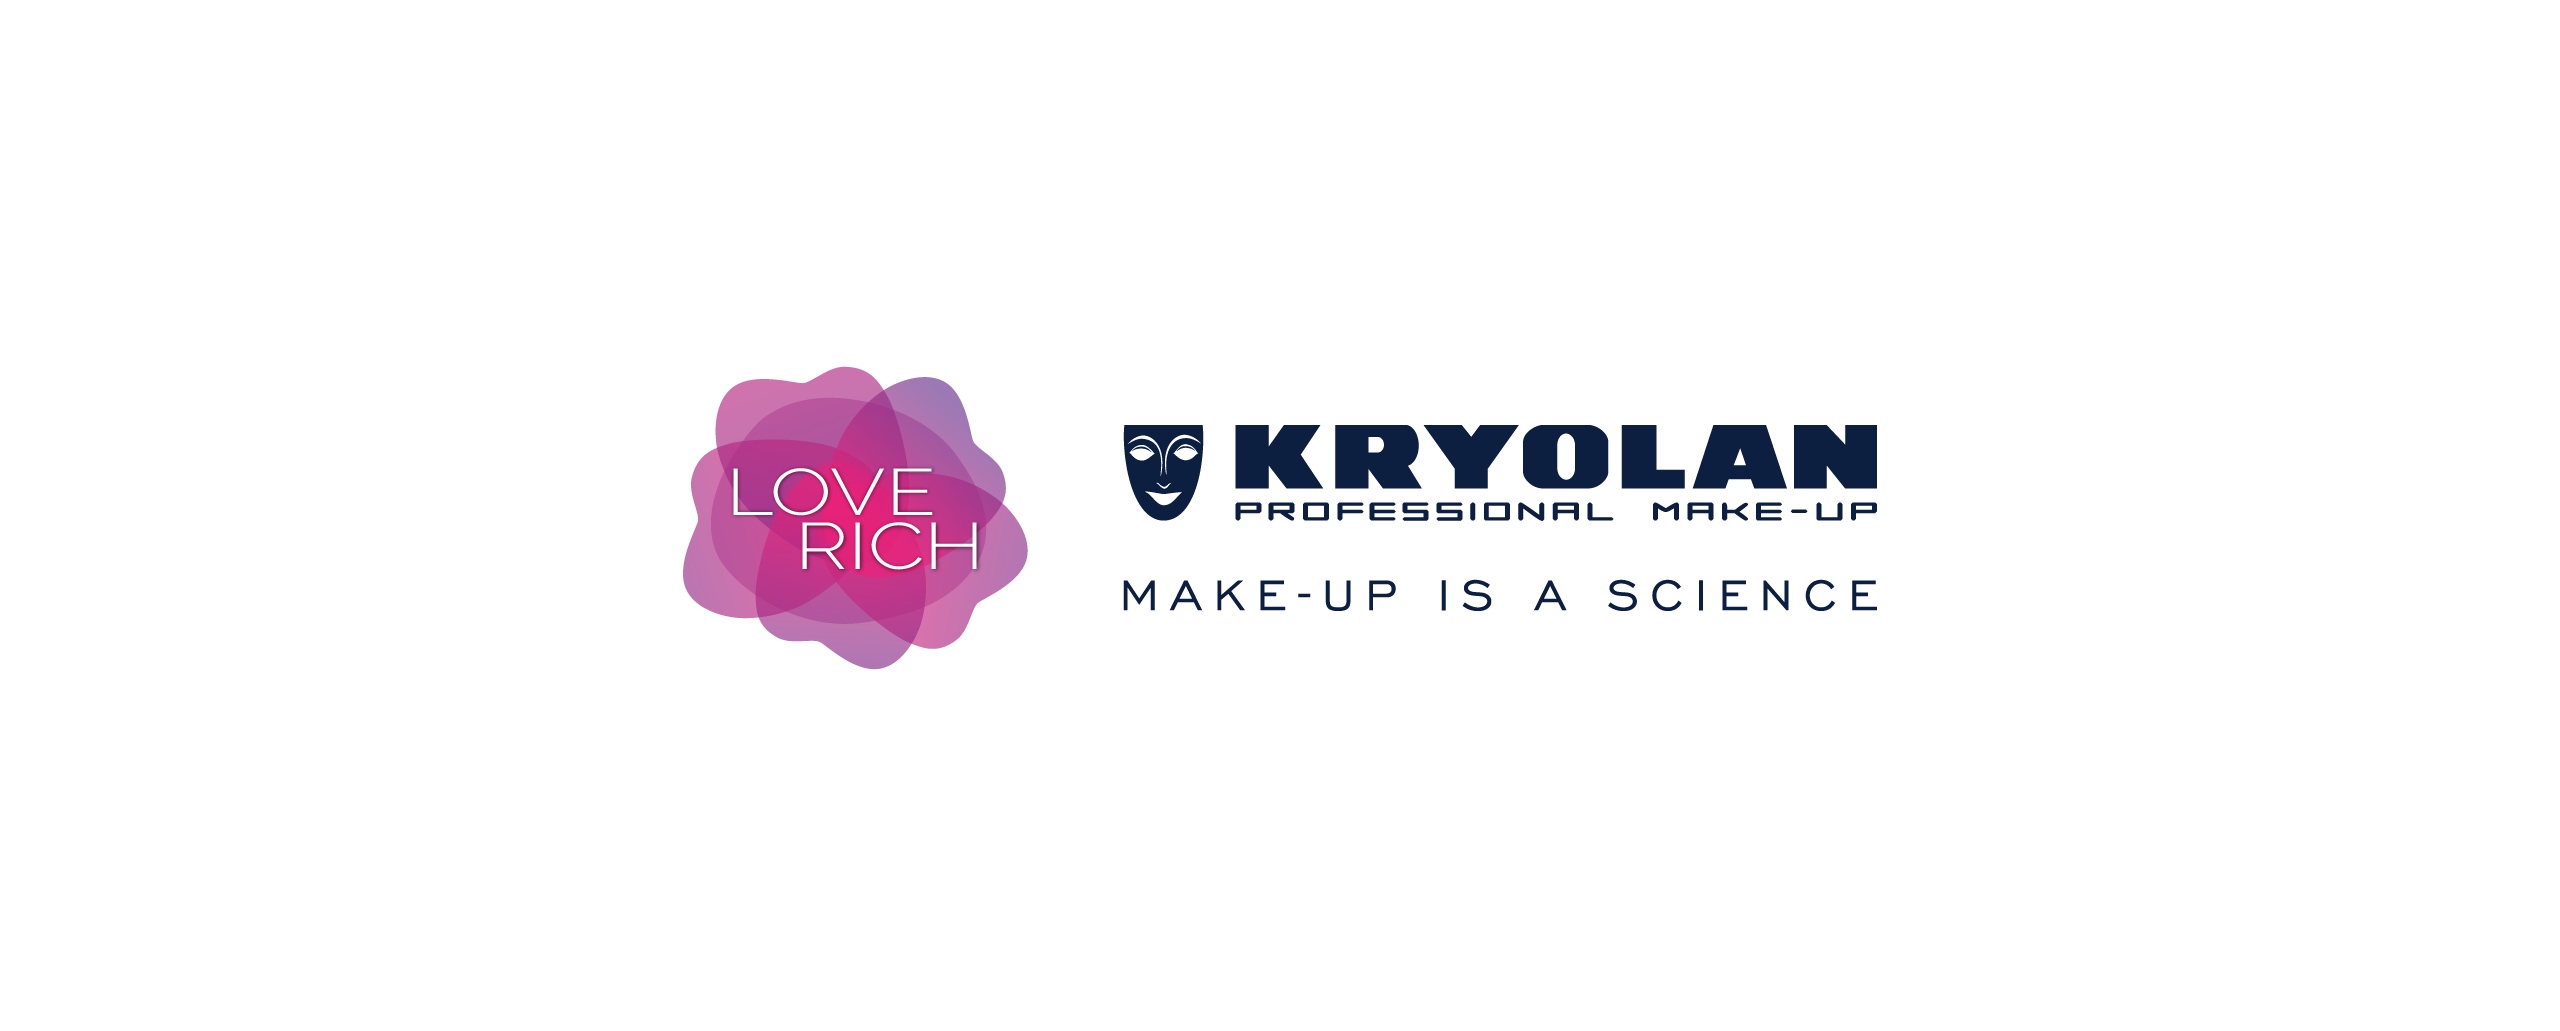 Brend Kryolan je beauty partner novih epizoda Woman.Comm podcasta